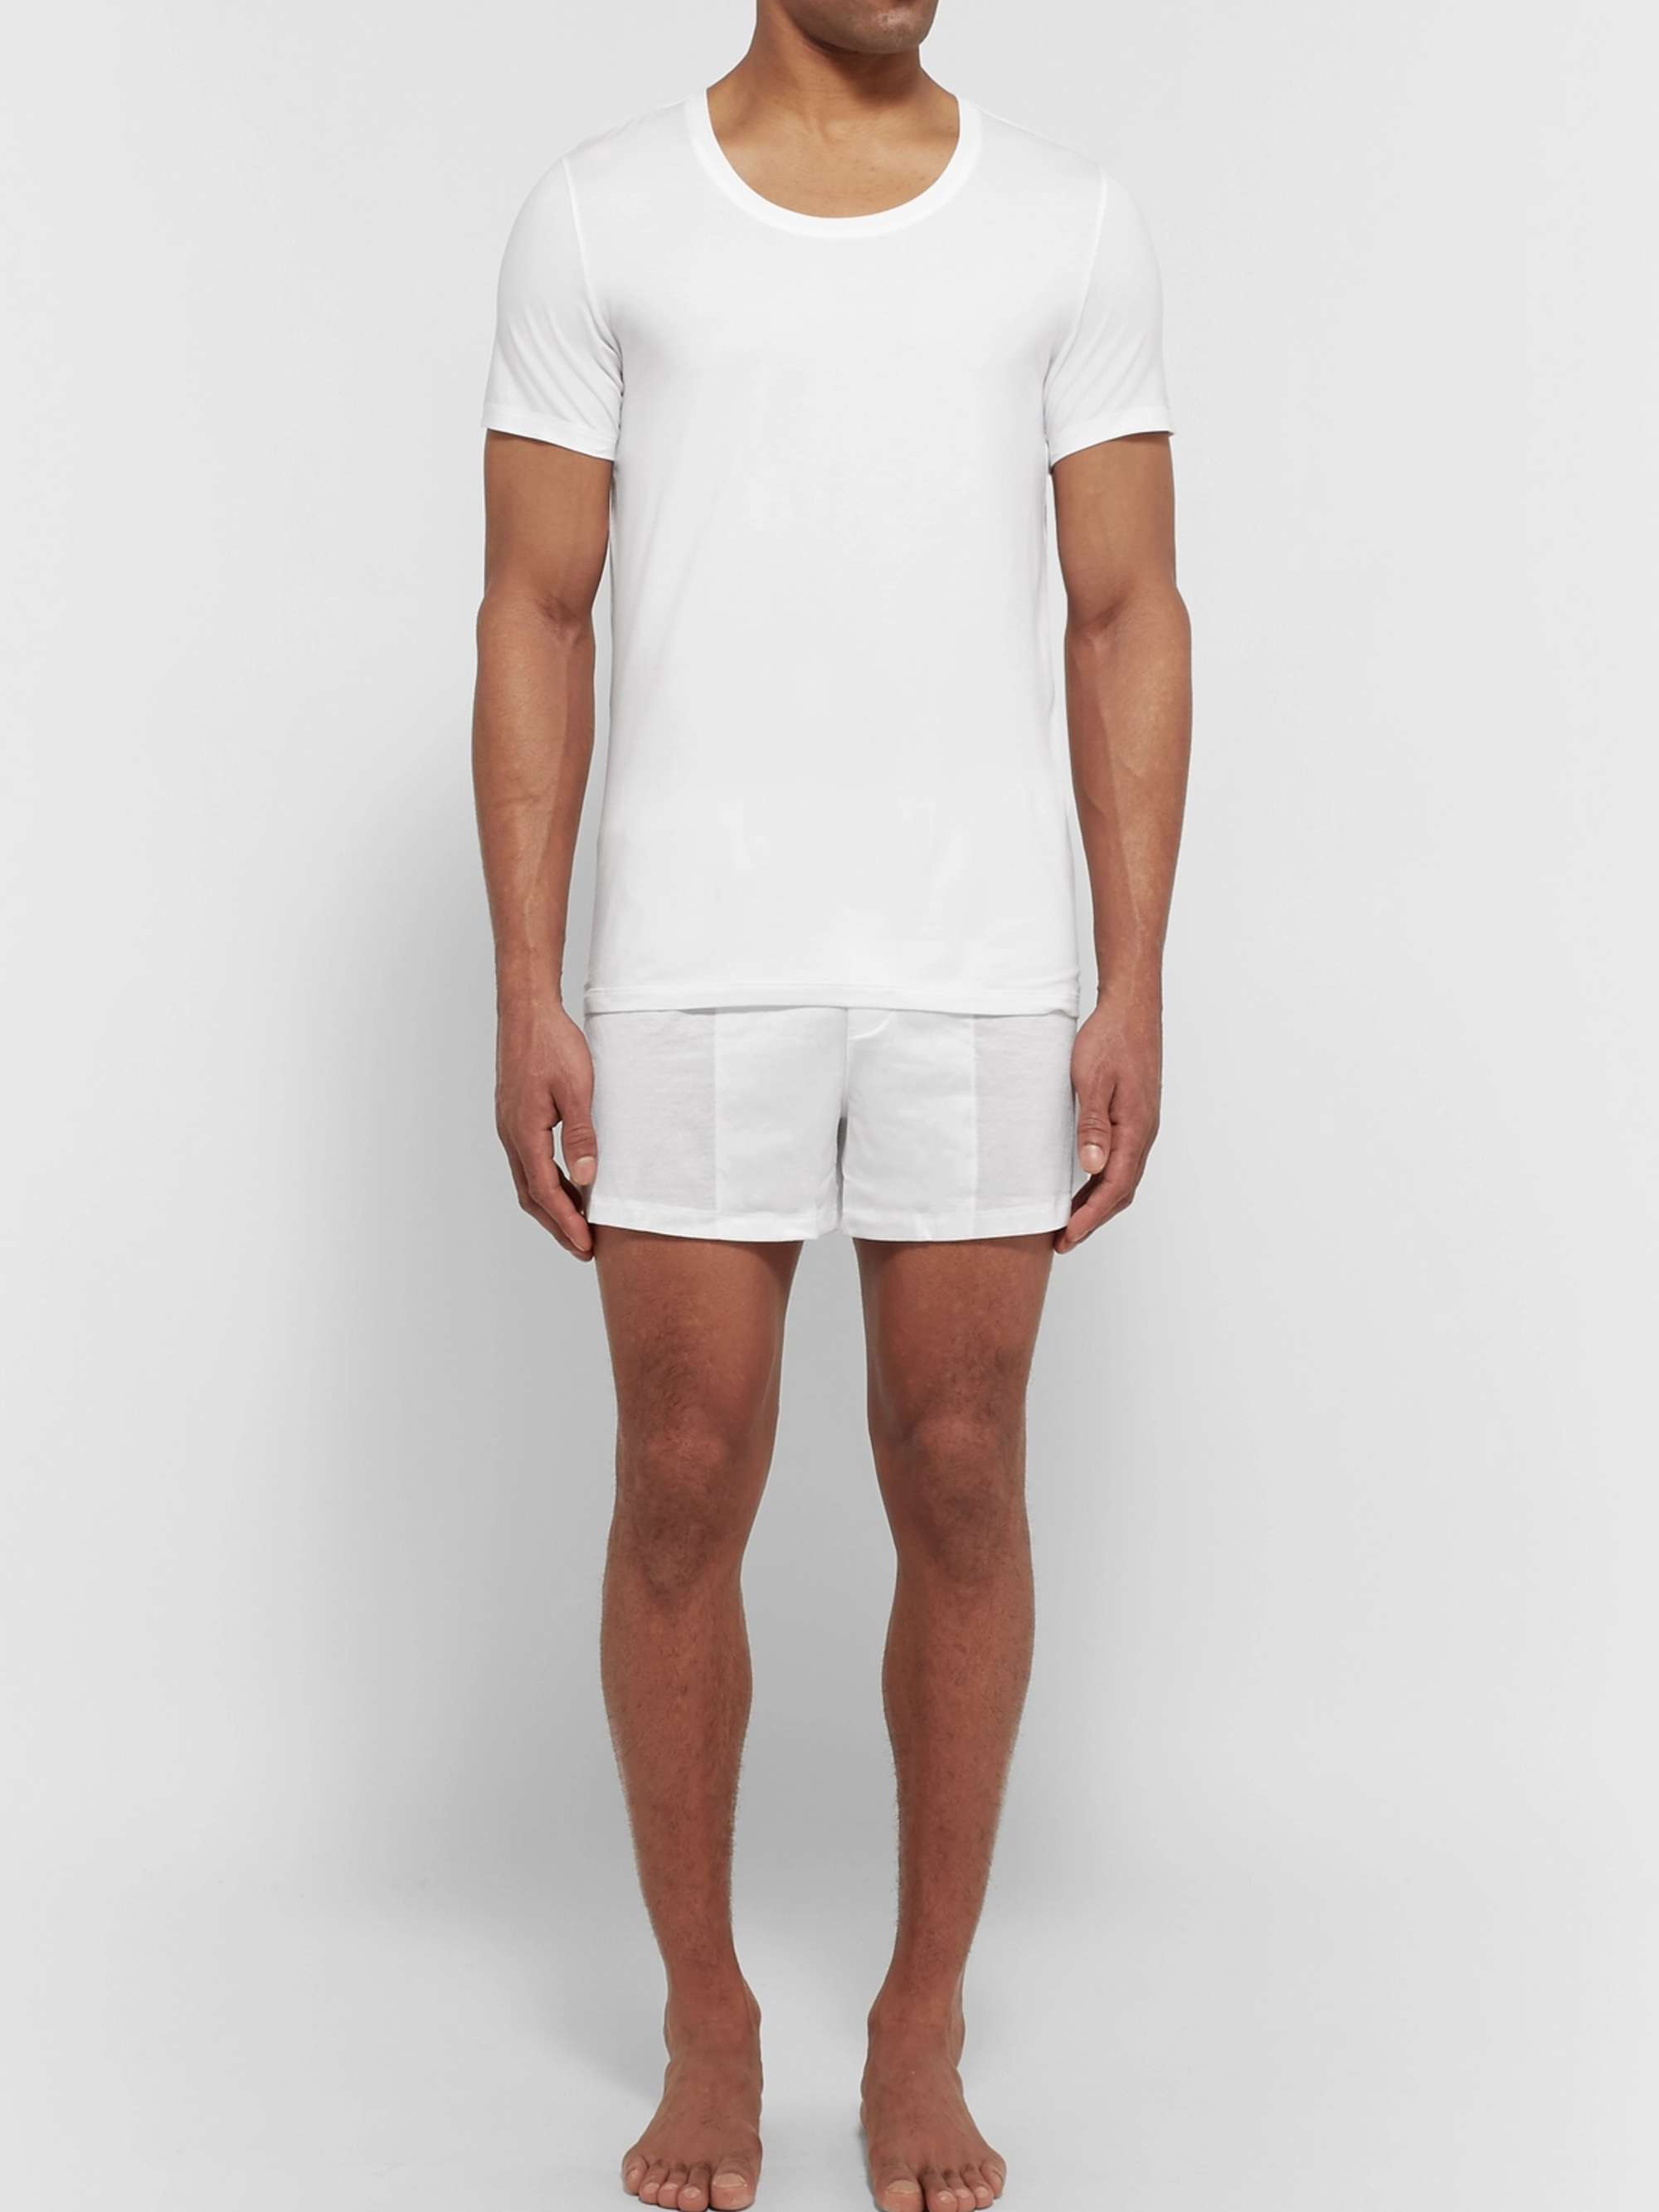 SUNSPEL Superfine Cotton Underwear T-Shirt | MR PORTER